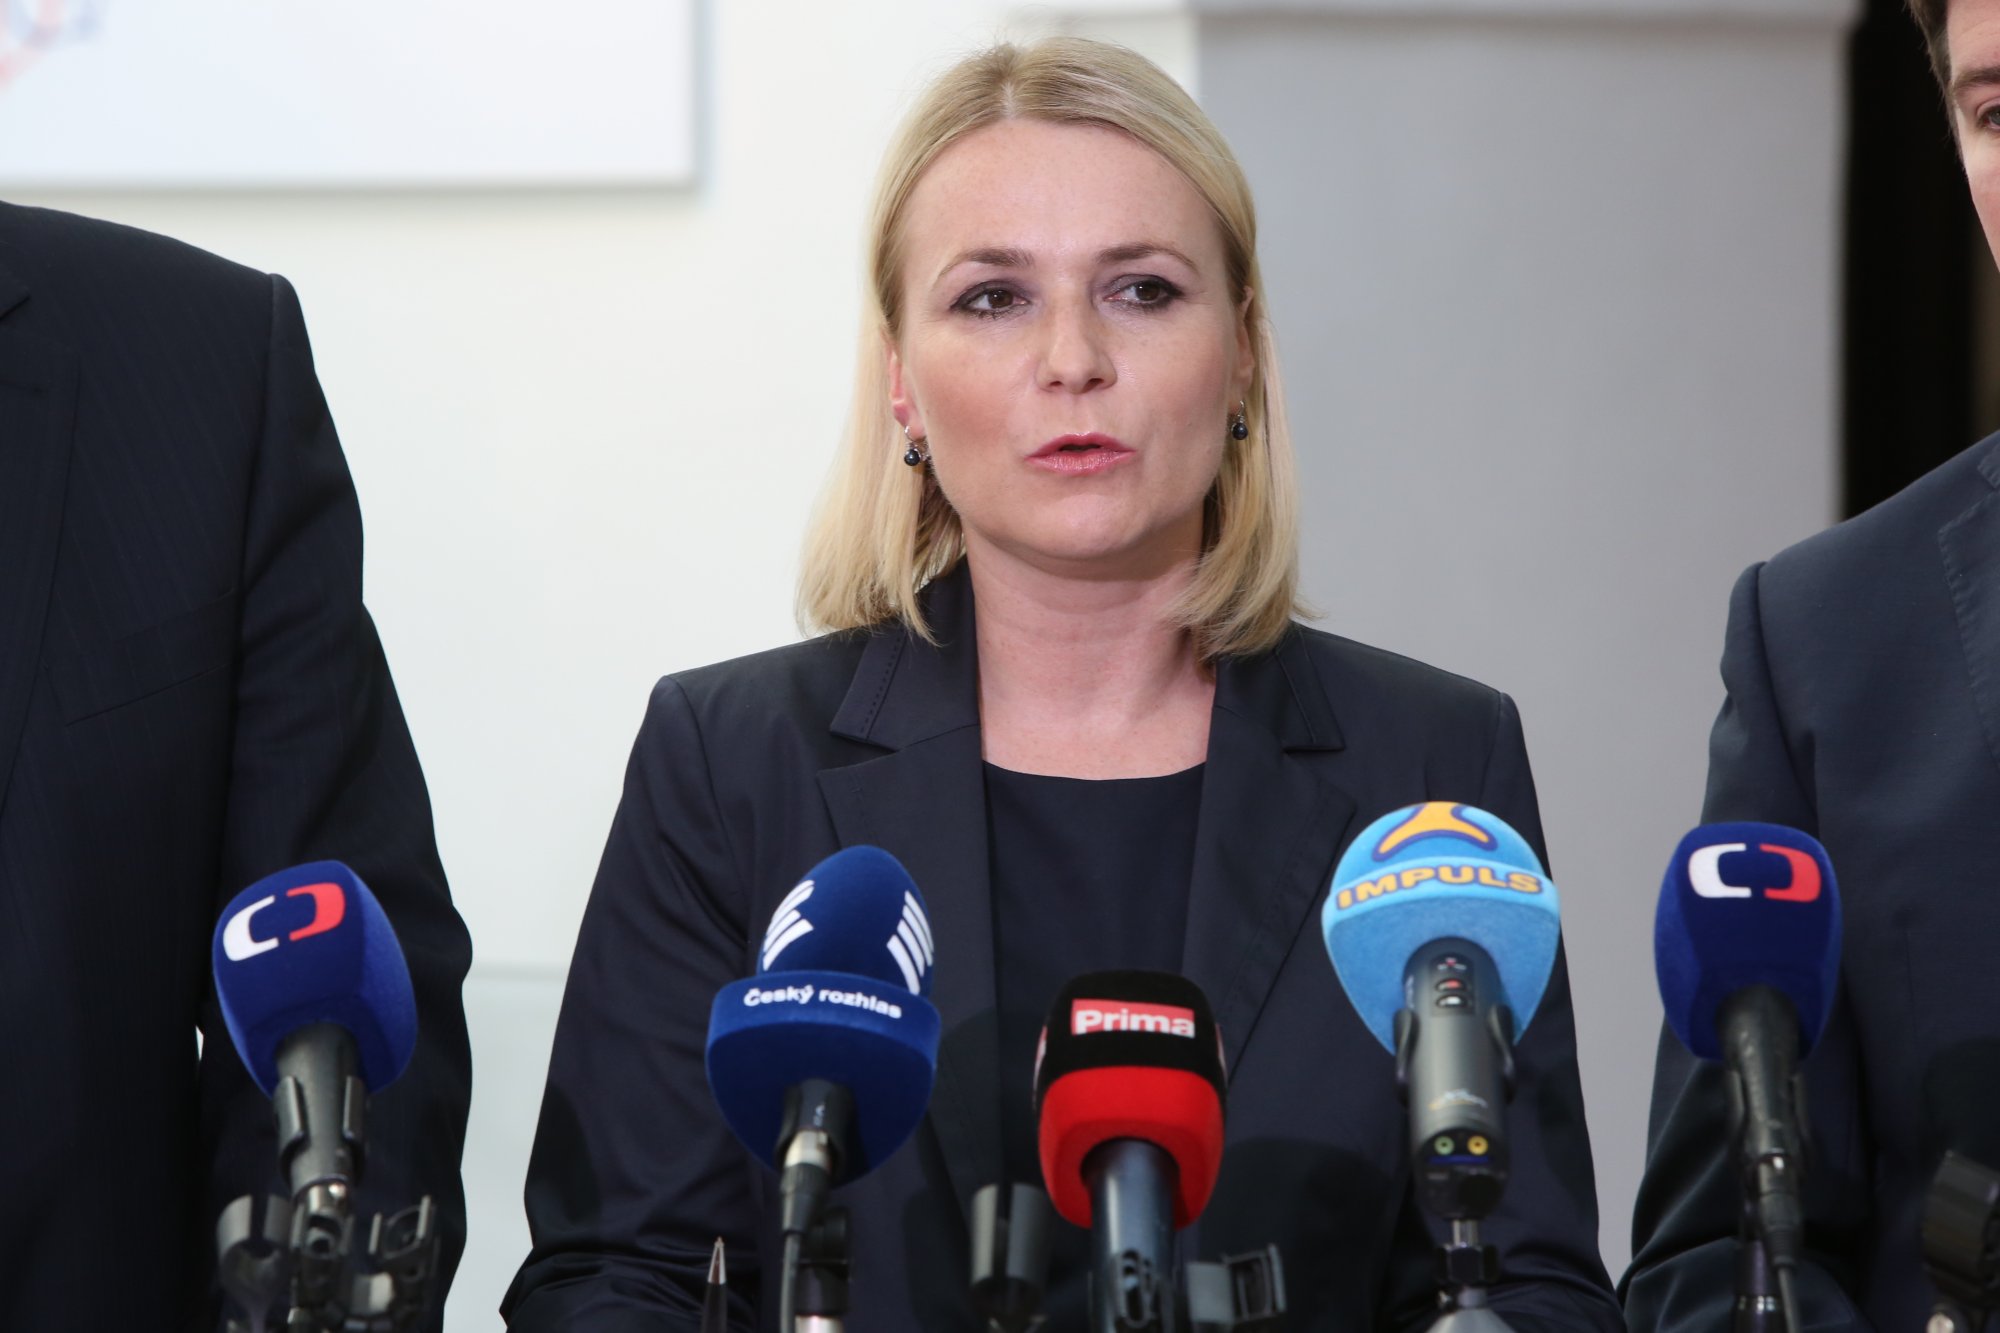 Ministr Chovanec nedokázal stabilizovat policii a nevyužil příznivé ekonomické situace